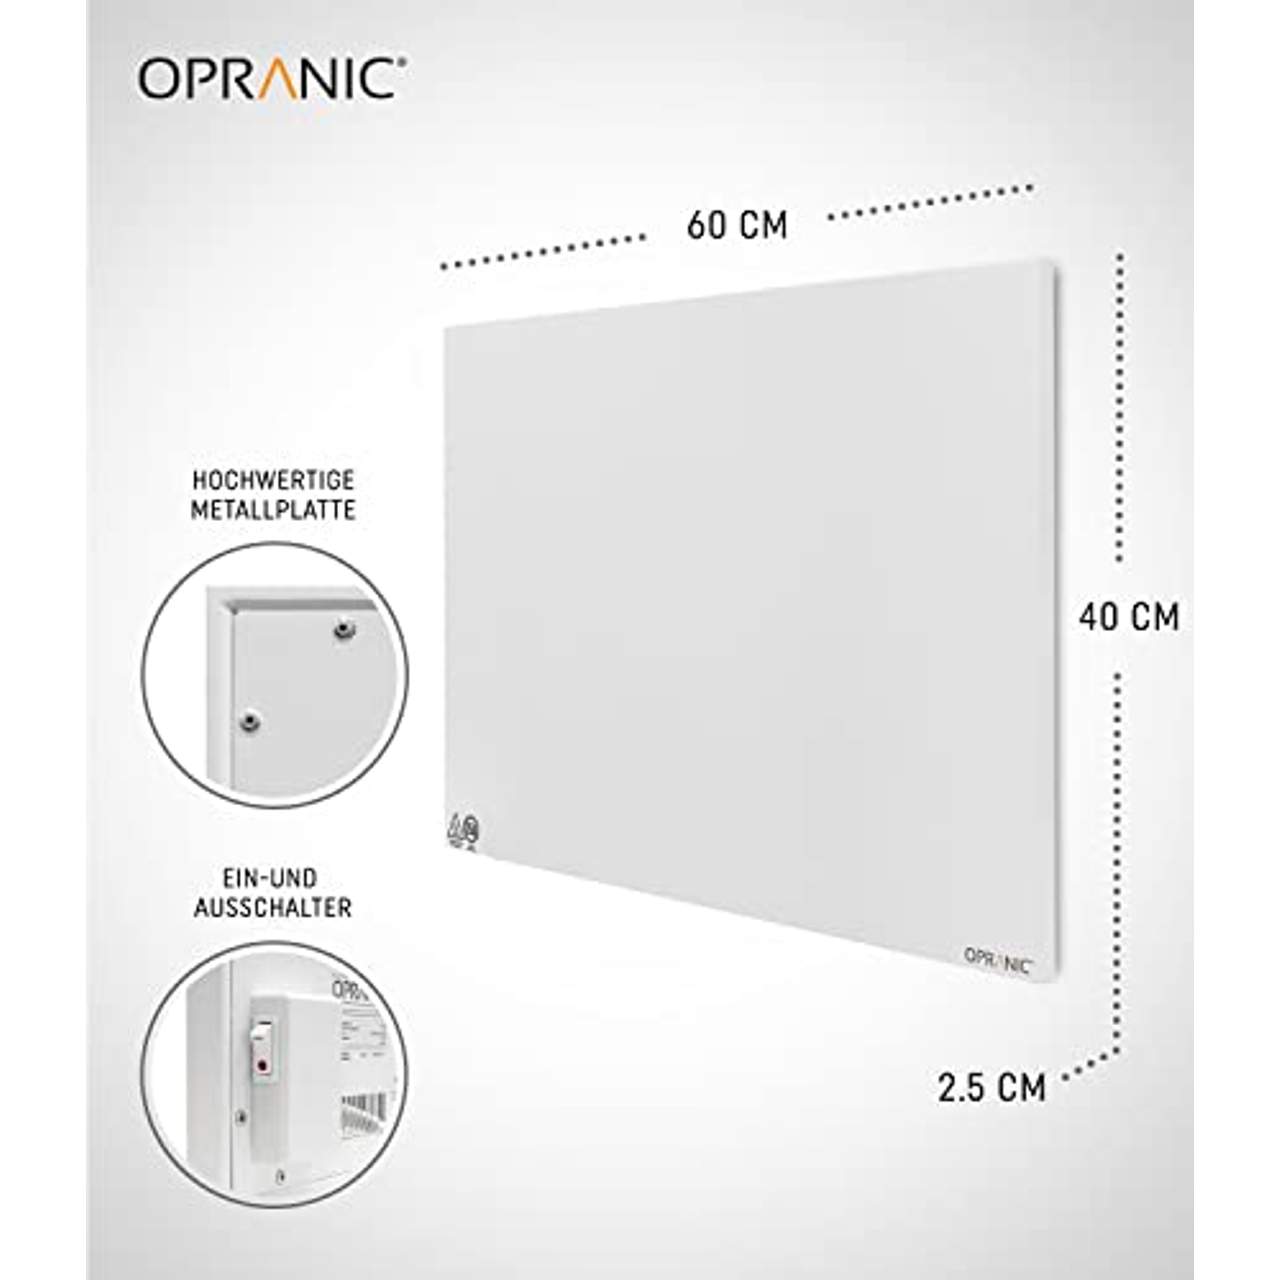 OPRANIC Premium Infrarotheizung 300W